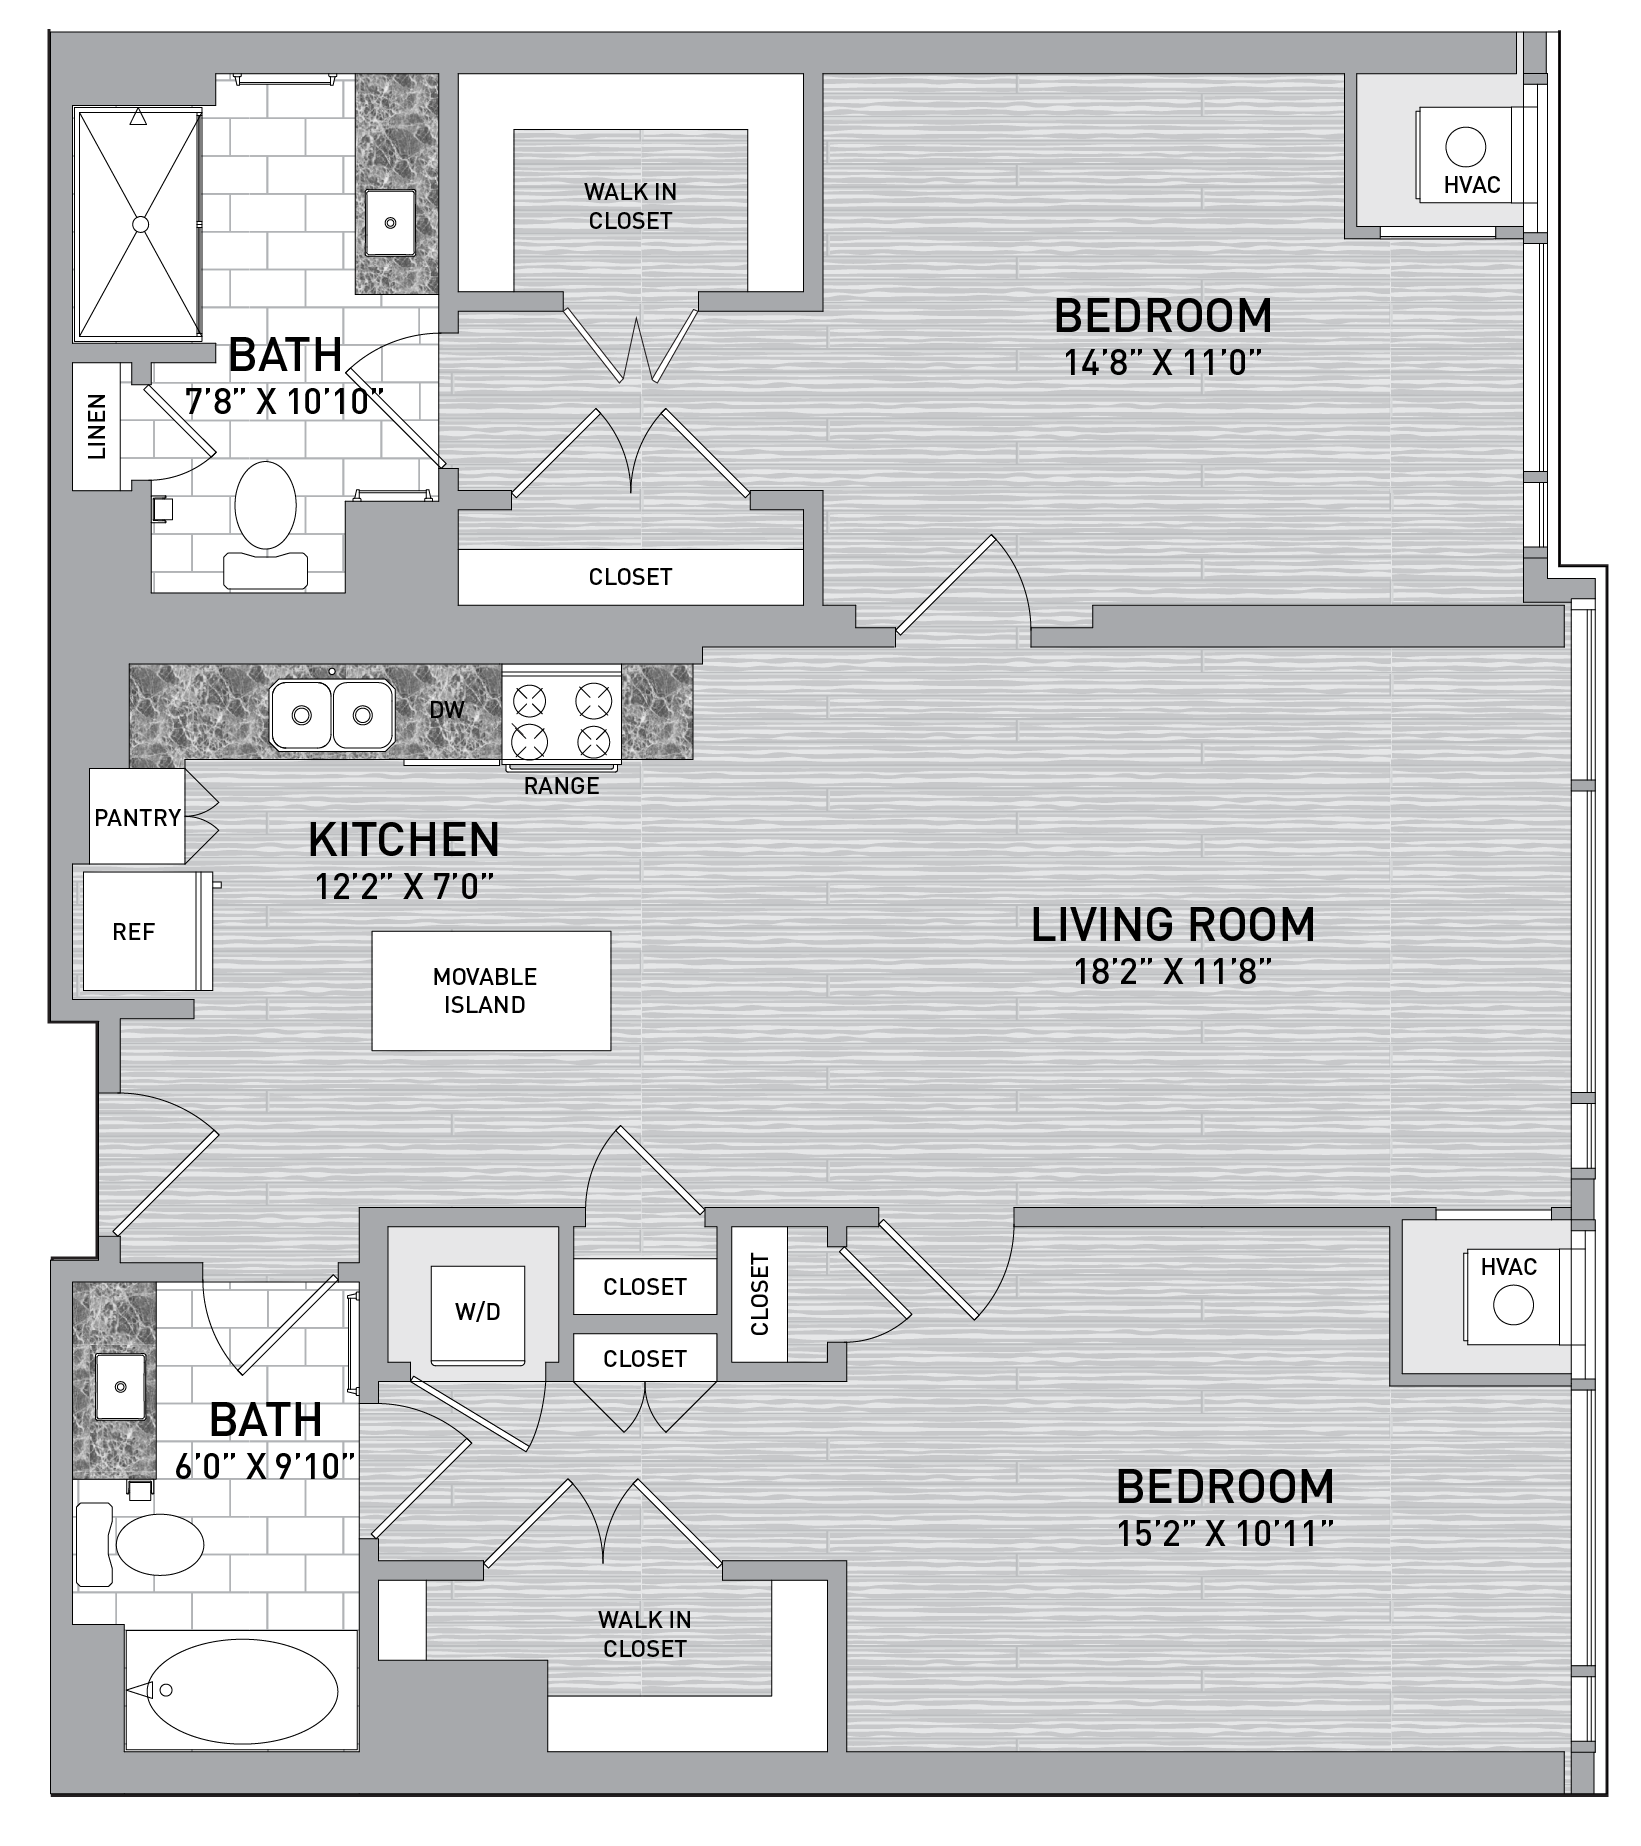 floorplan image of unit id 0331